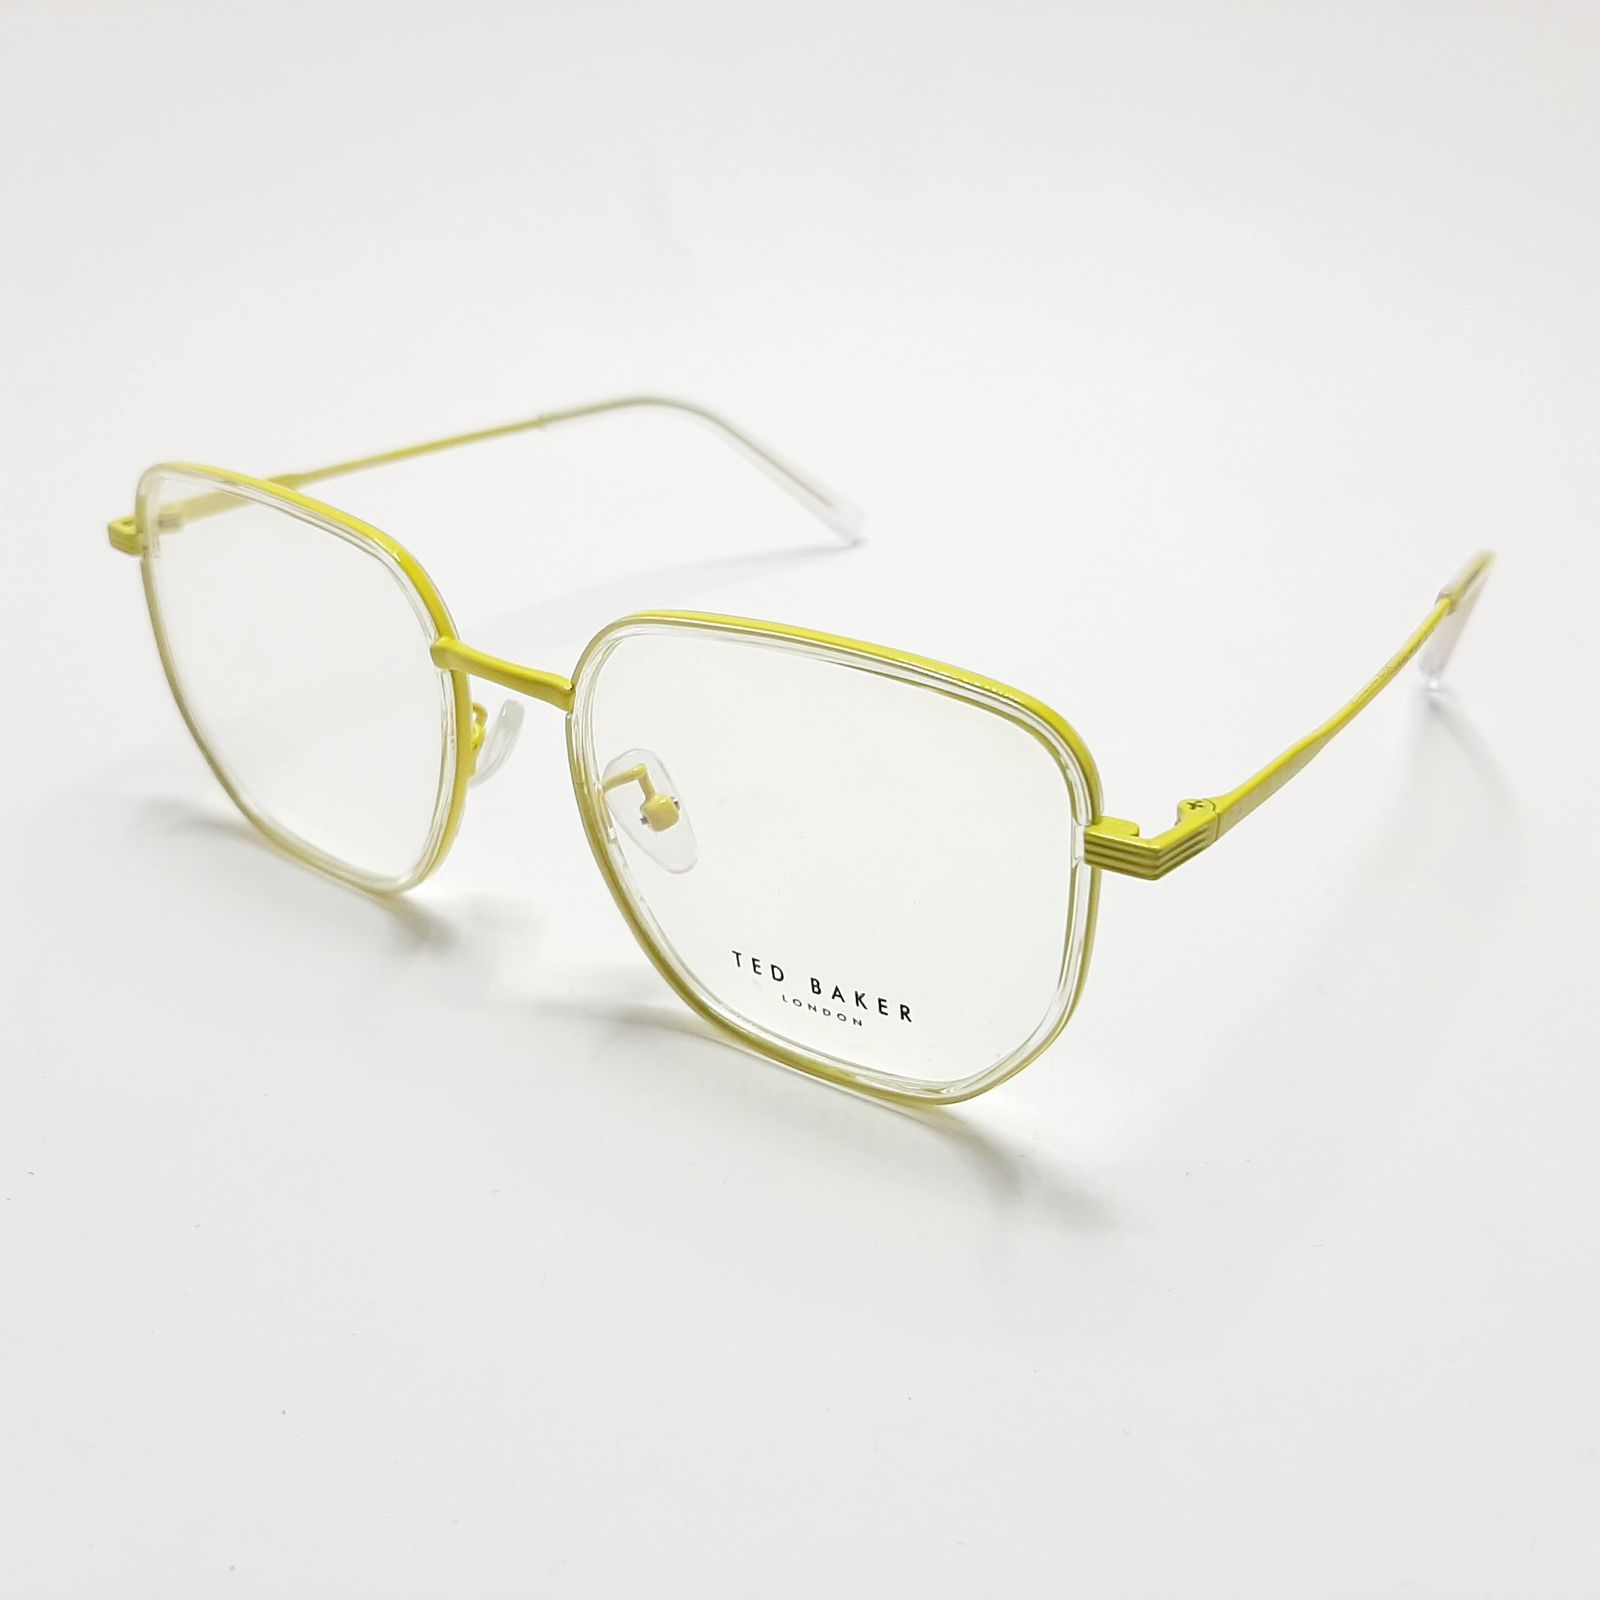 فریم عینک طبی تد بیکر مدل TB55082c7 -  - 4